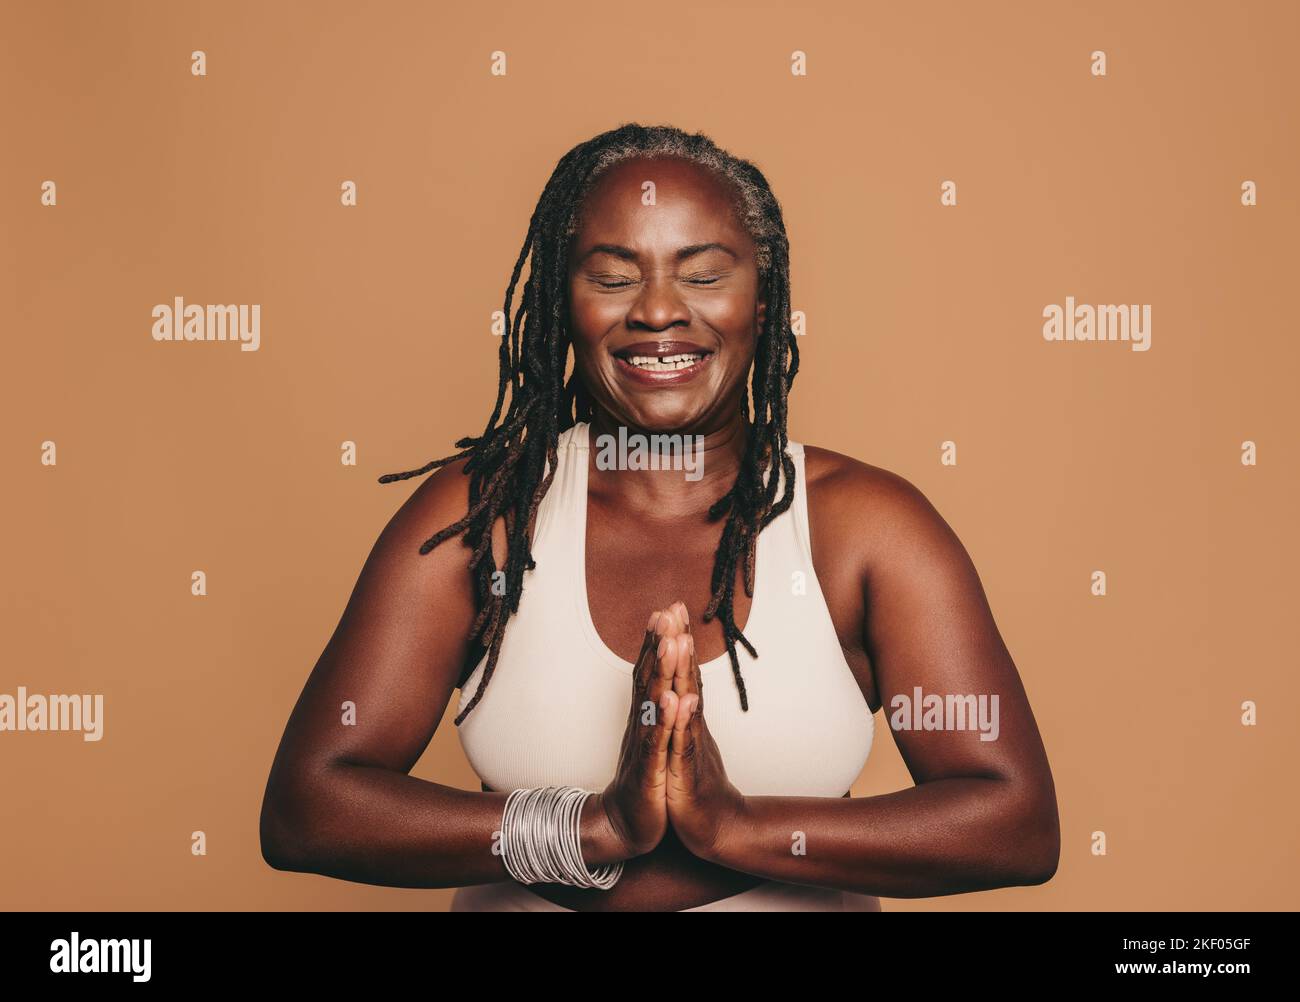 Bonne femme méditant avec ses yeux fermés et ses mains en position de prière. Femme souriante avec des dreadlocks pratiquant le yoga dans un studio. Sport mature Banque D'Images